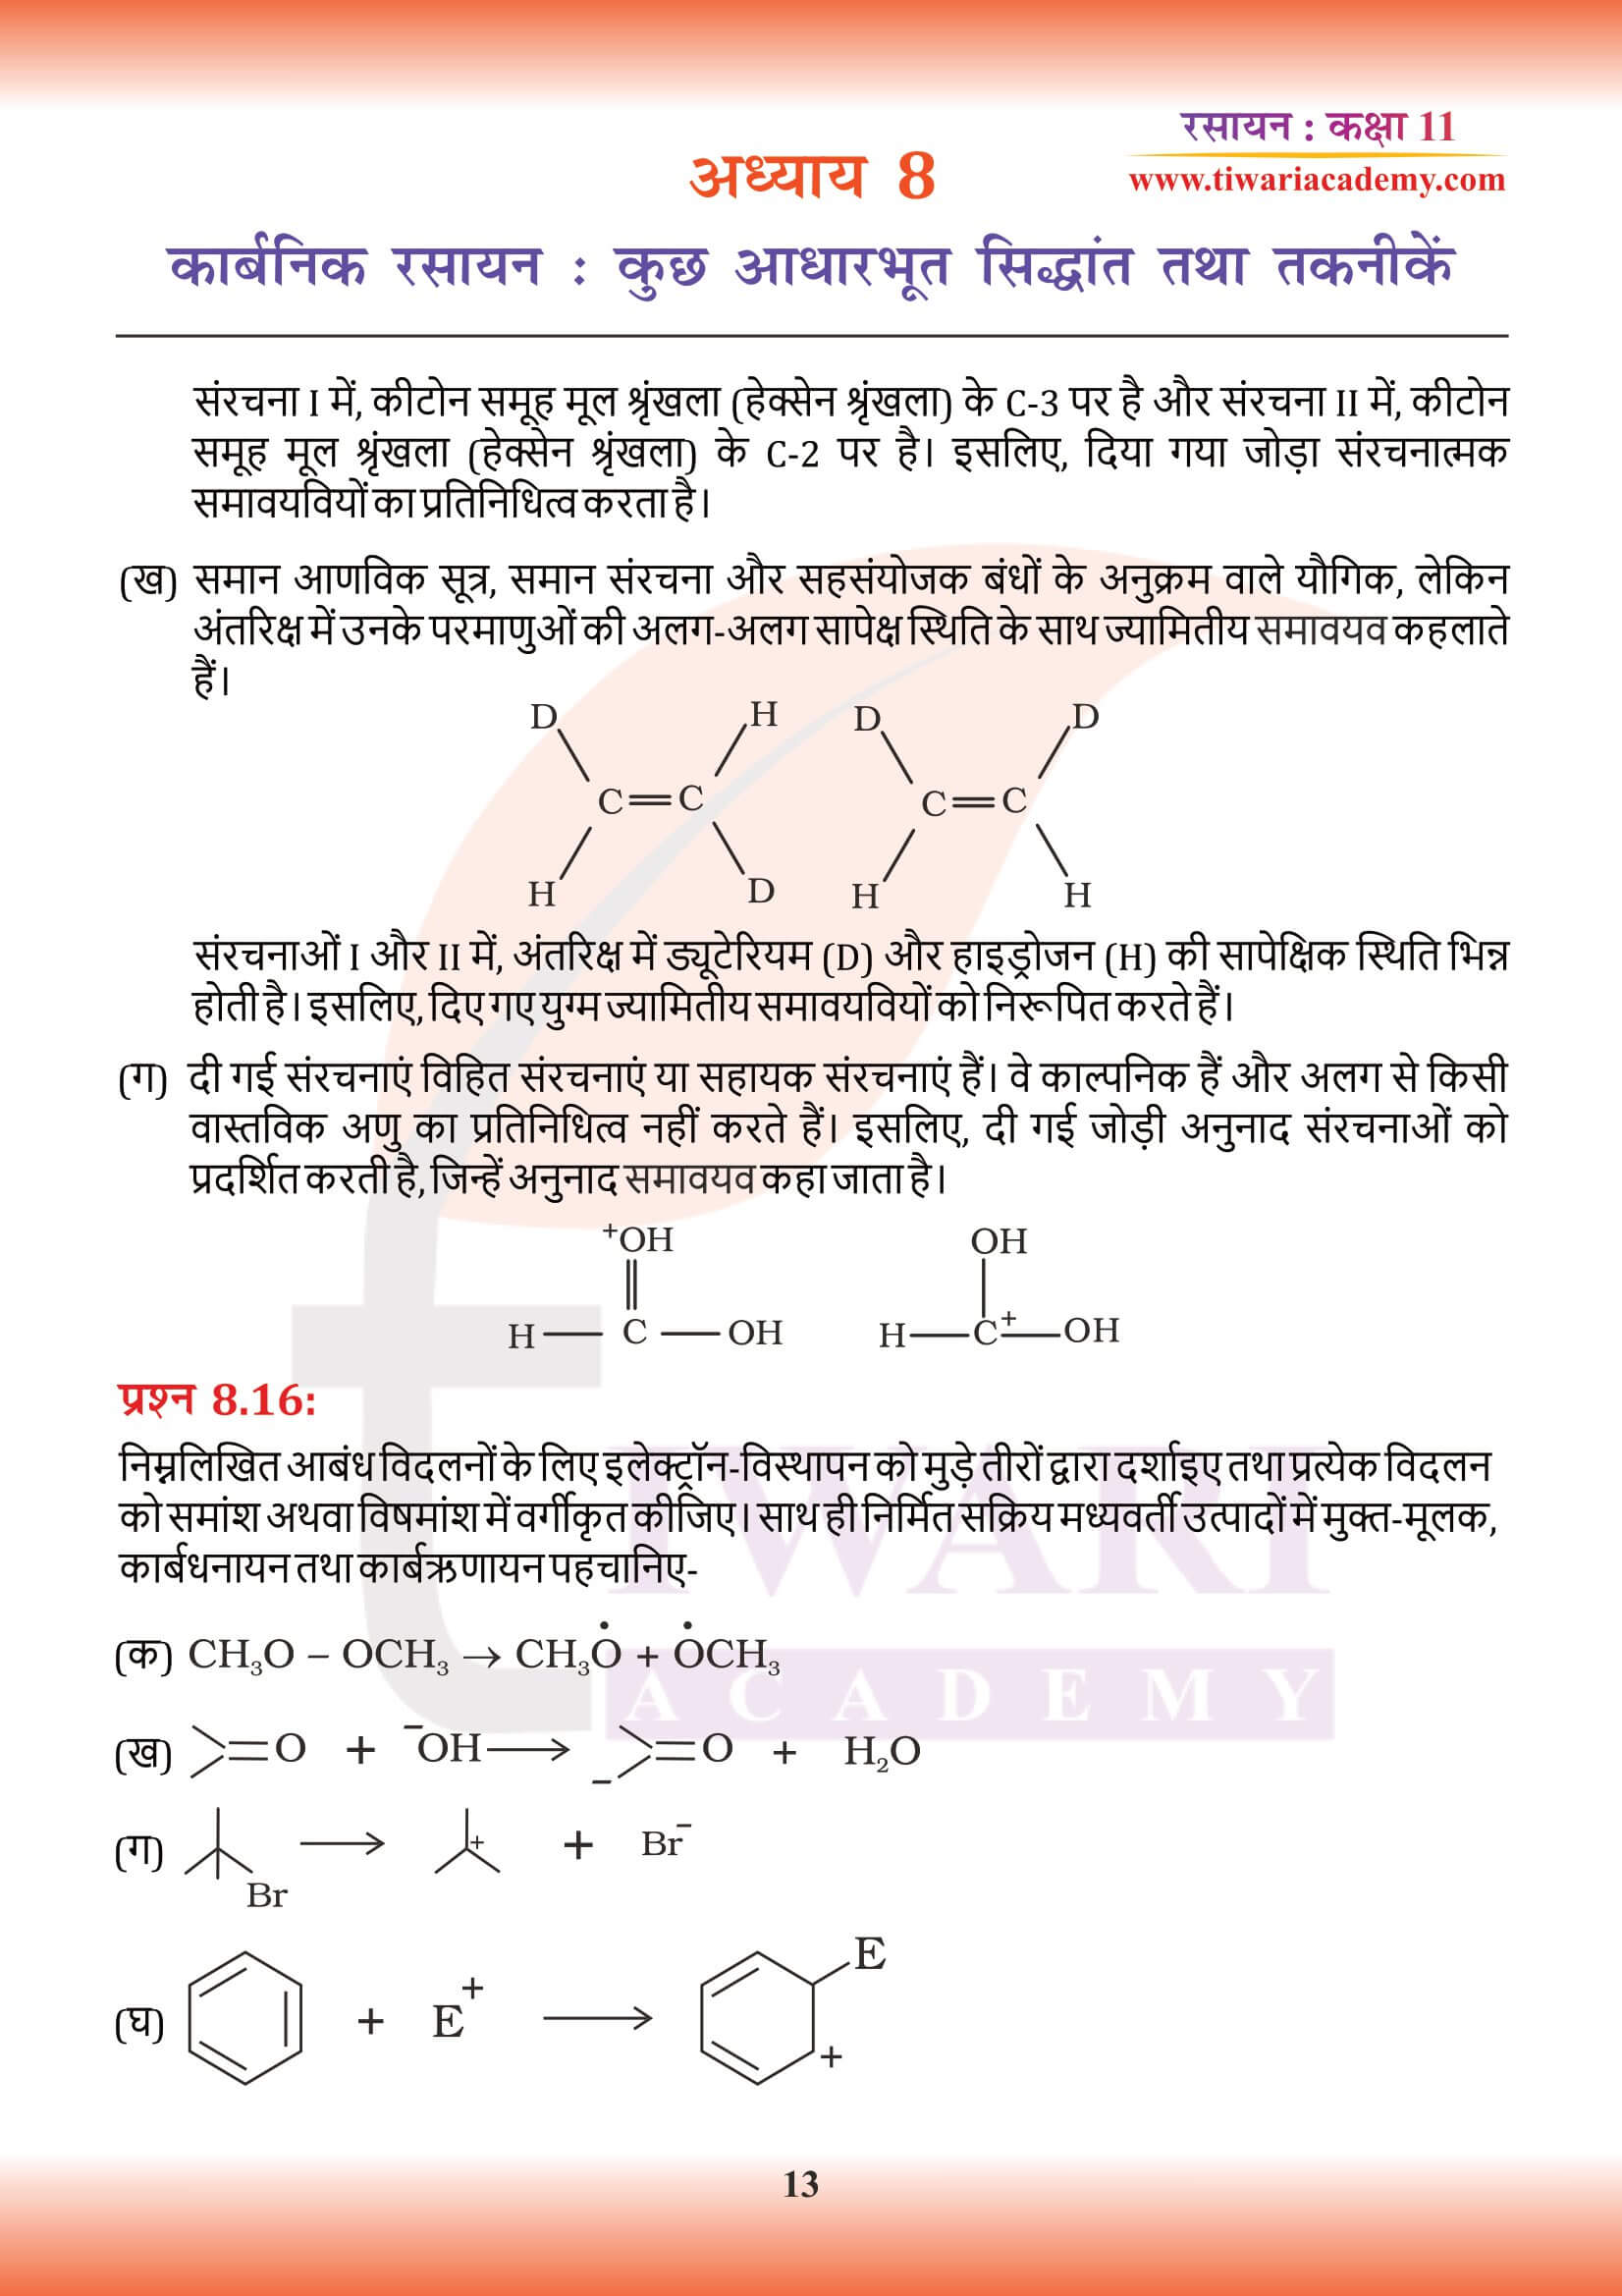 कक्षा 11 रसायन अध्याय 8 के उत्तर